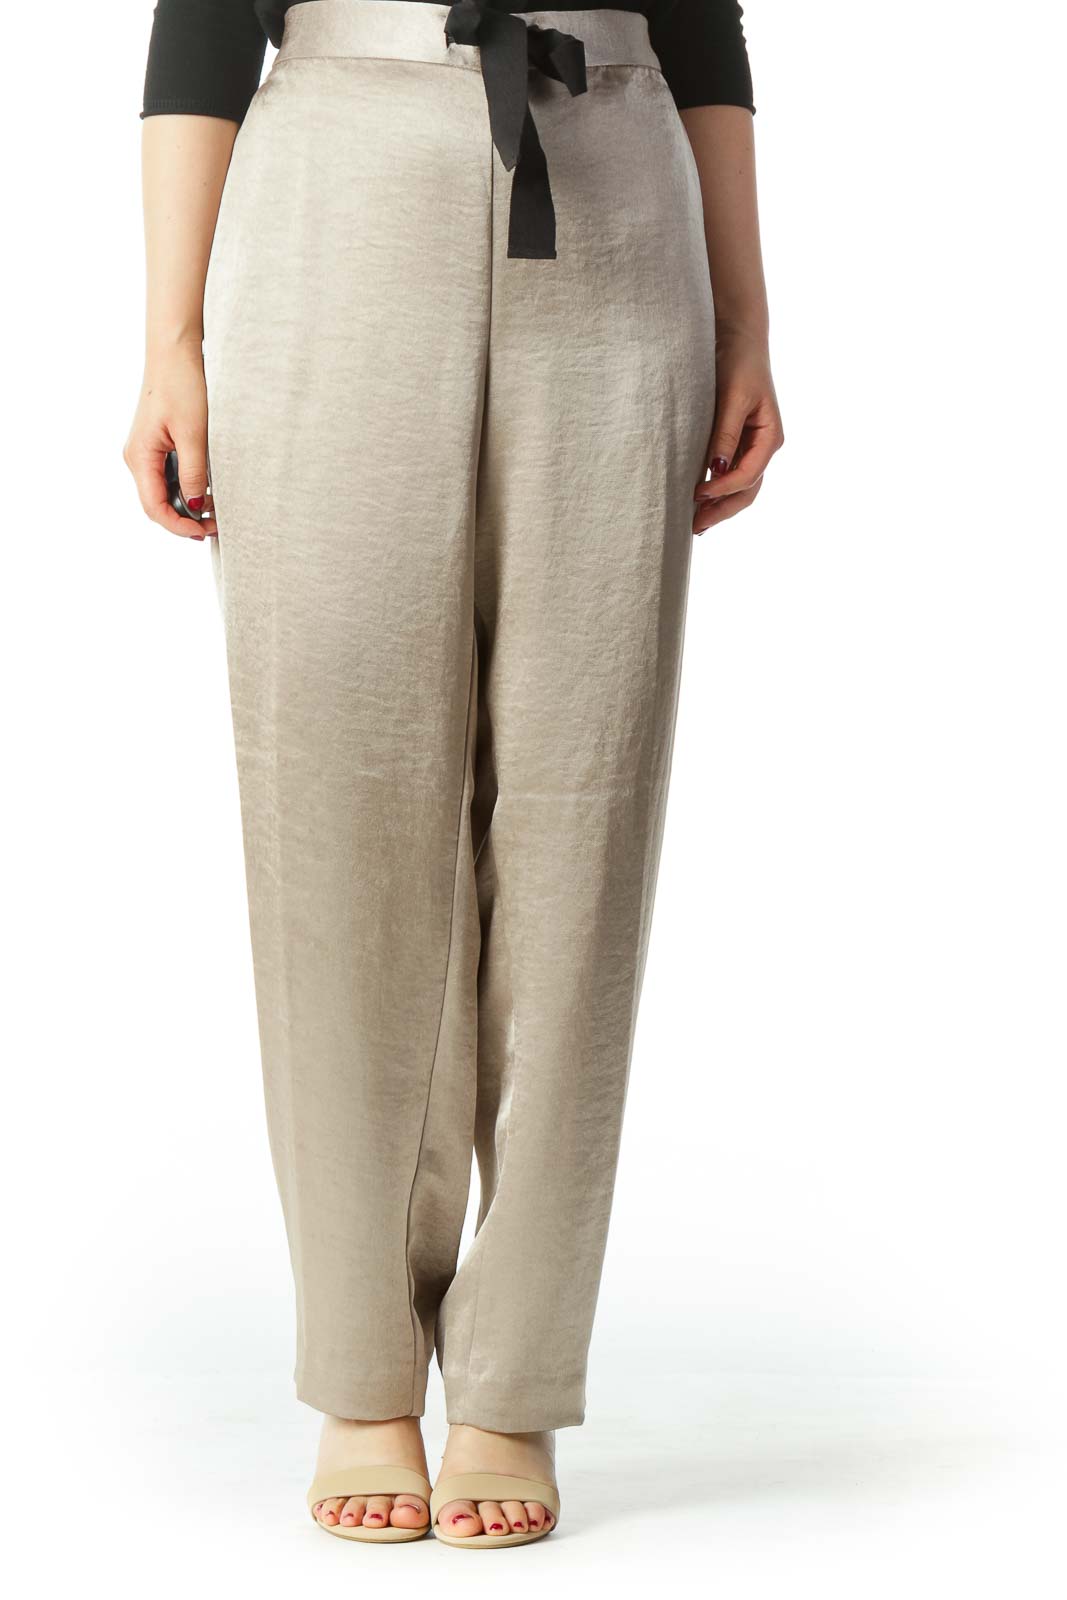 Pants Work/dress By Ann Taylor O Size: Xxs